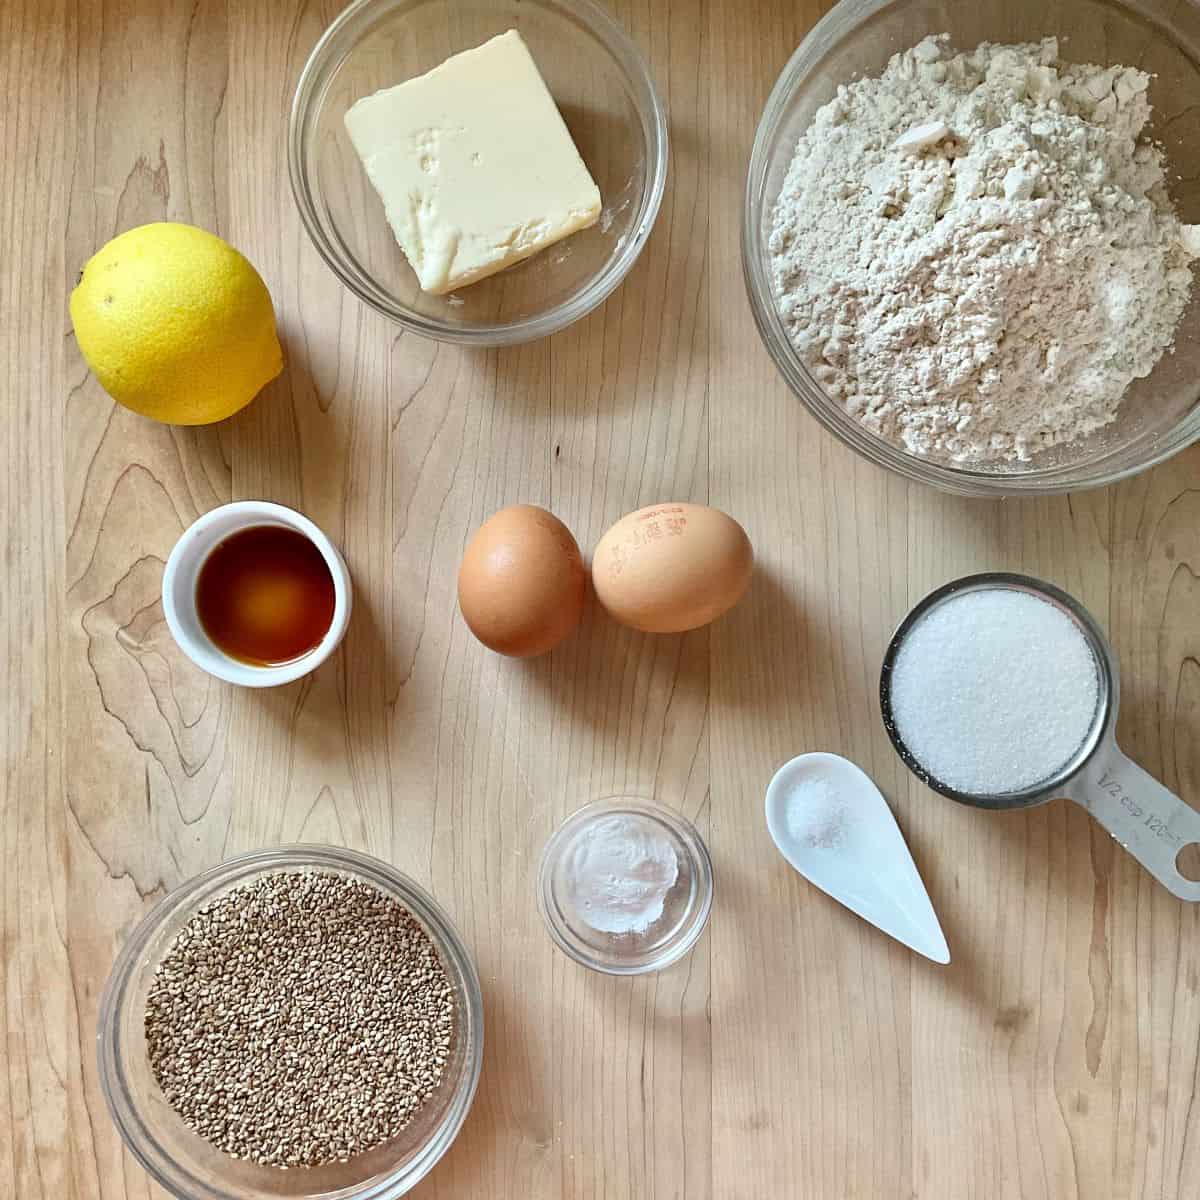 Ingredients to make Italian sesame cookies.